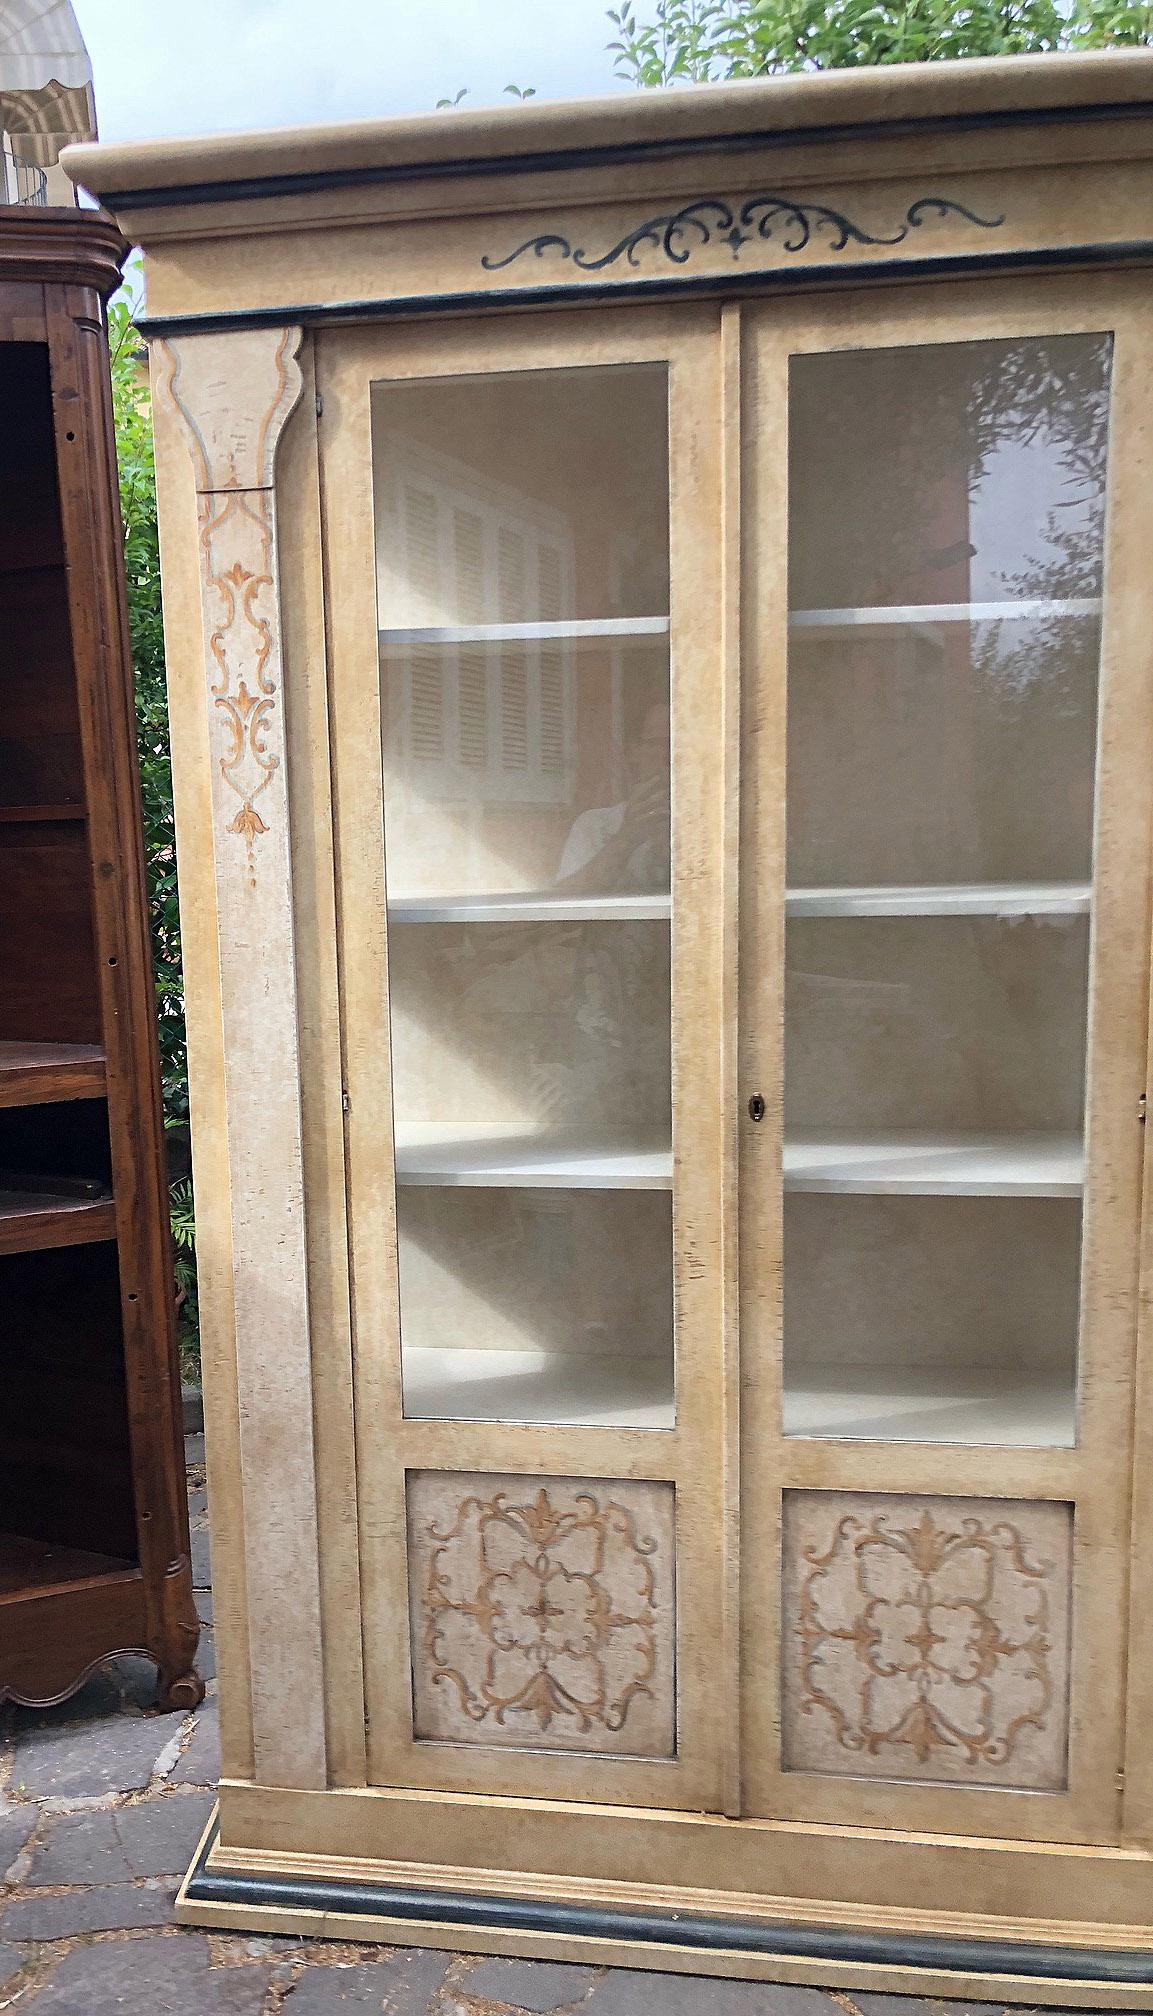 Italienisches Bücherregal aus Tanne, mit zwei Türen, handbemalt, mit Glas auf drei Seiten, Innenböden.
Sehr solide und elegant. 
In meinem Lager habe ich zwei dieser Bücherregale, wie auf den Fotos zu sehen.
Sie sind sich sehr ähnlich, gerade